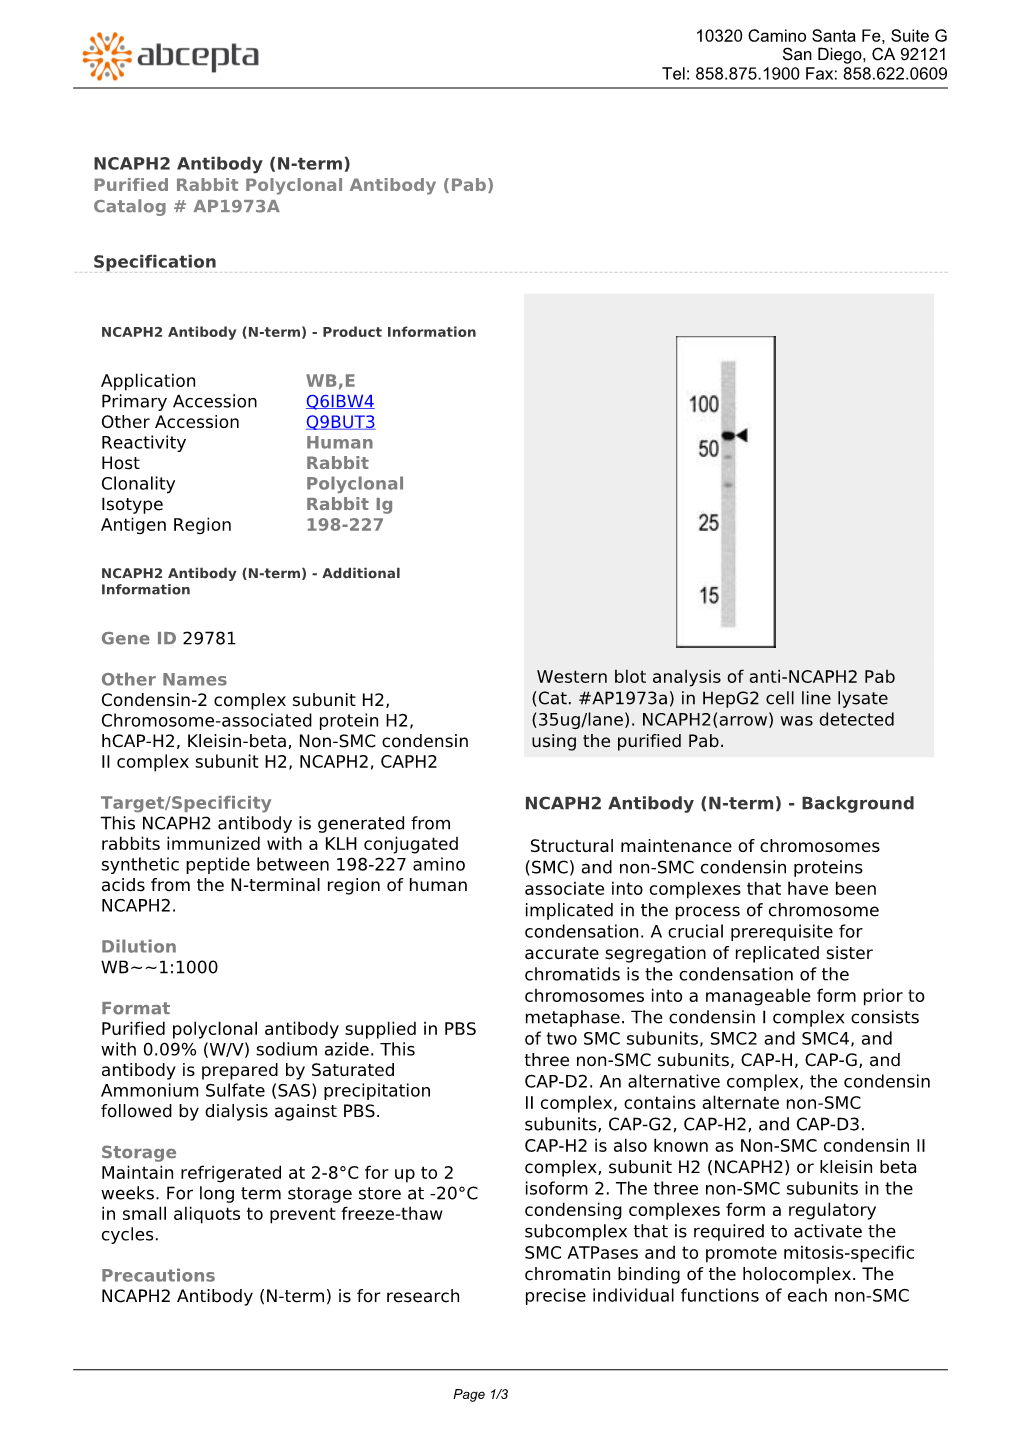 NCAPH2 Antibody (N-Term) Purified Rabbit Polyclonal Antibody (Pab) Catalog # AP1973A